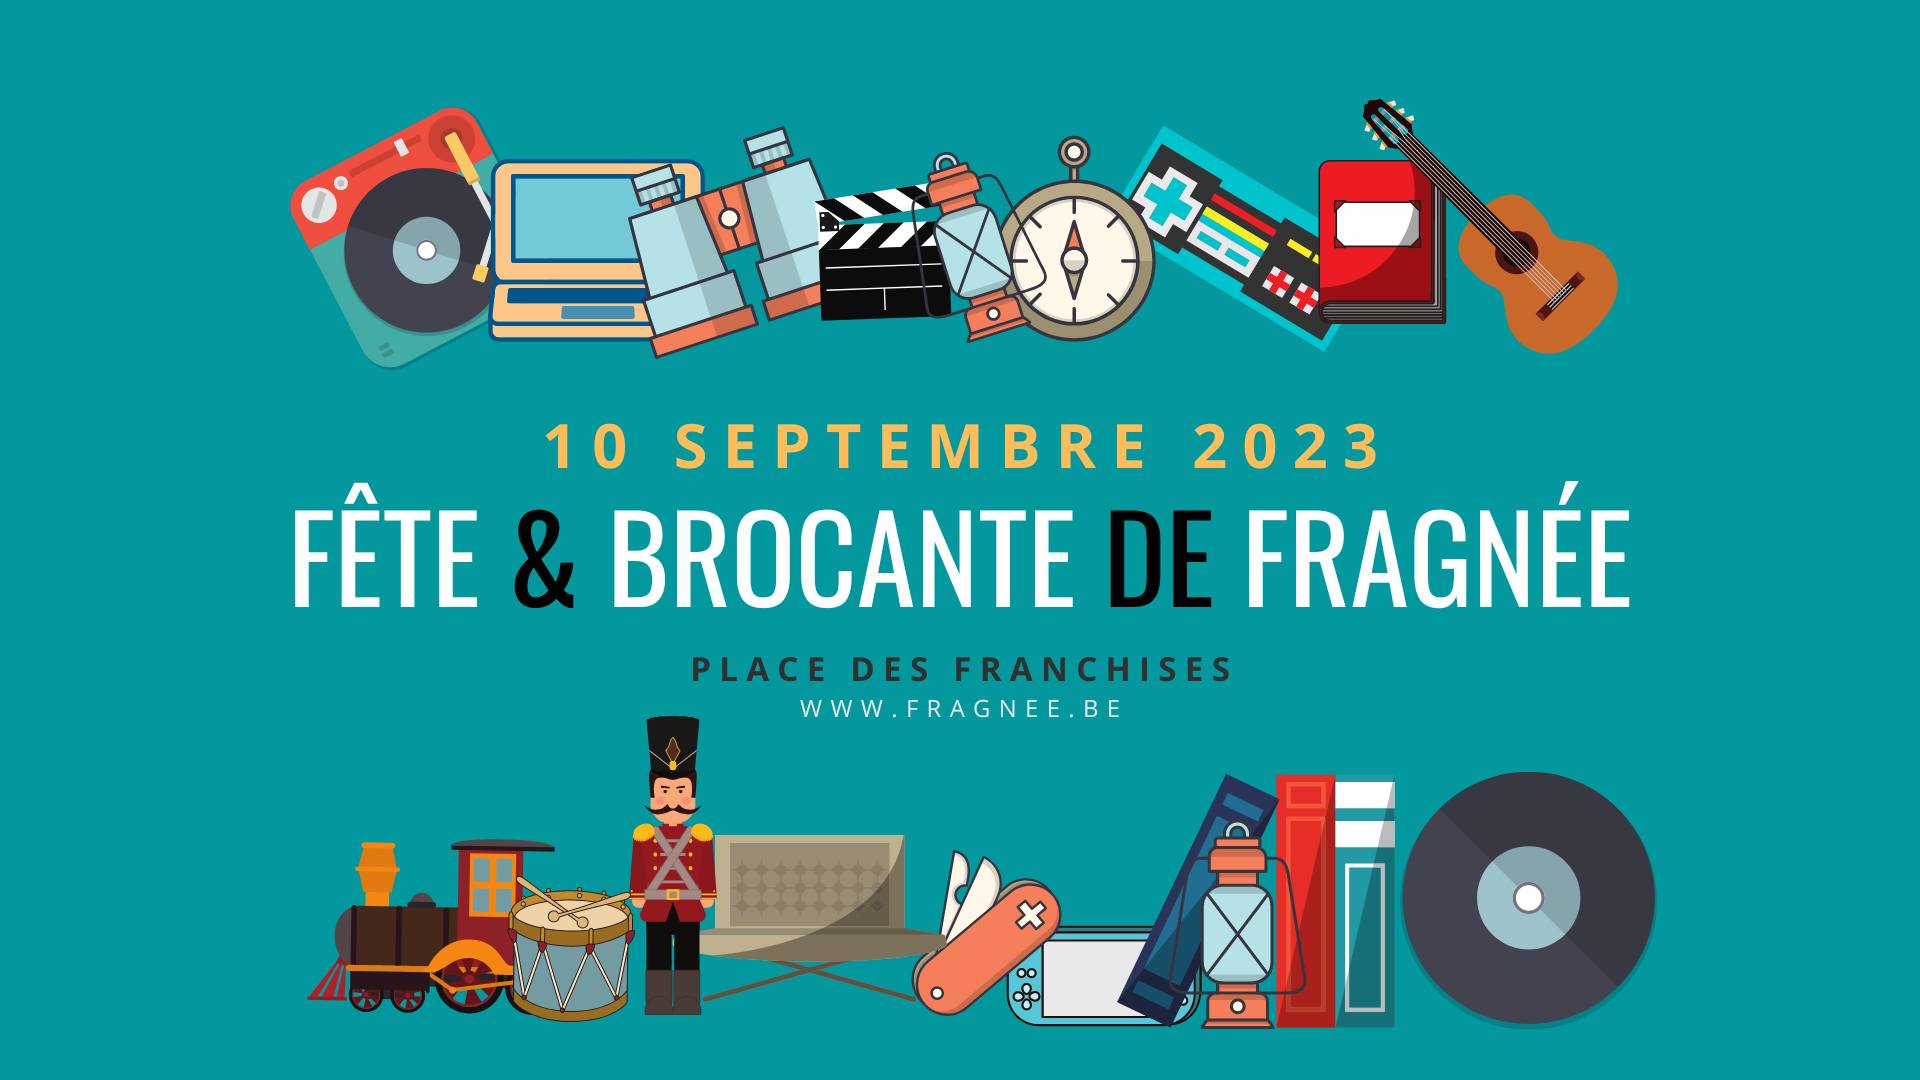 Fête & Brocante de Fragnée 2023 Place des Franchisés à LIEGE